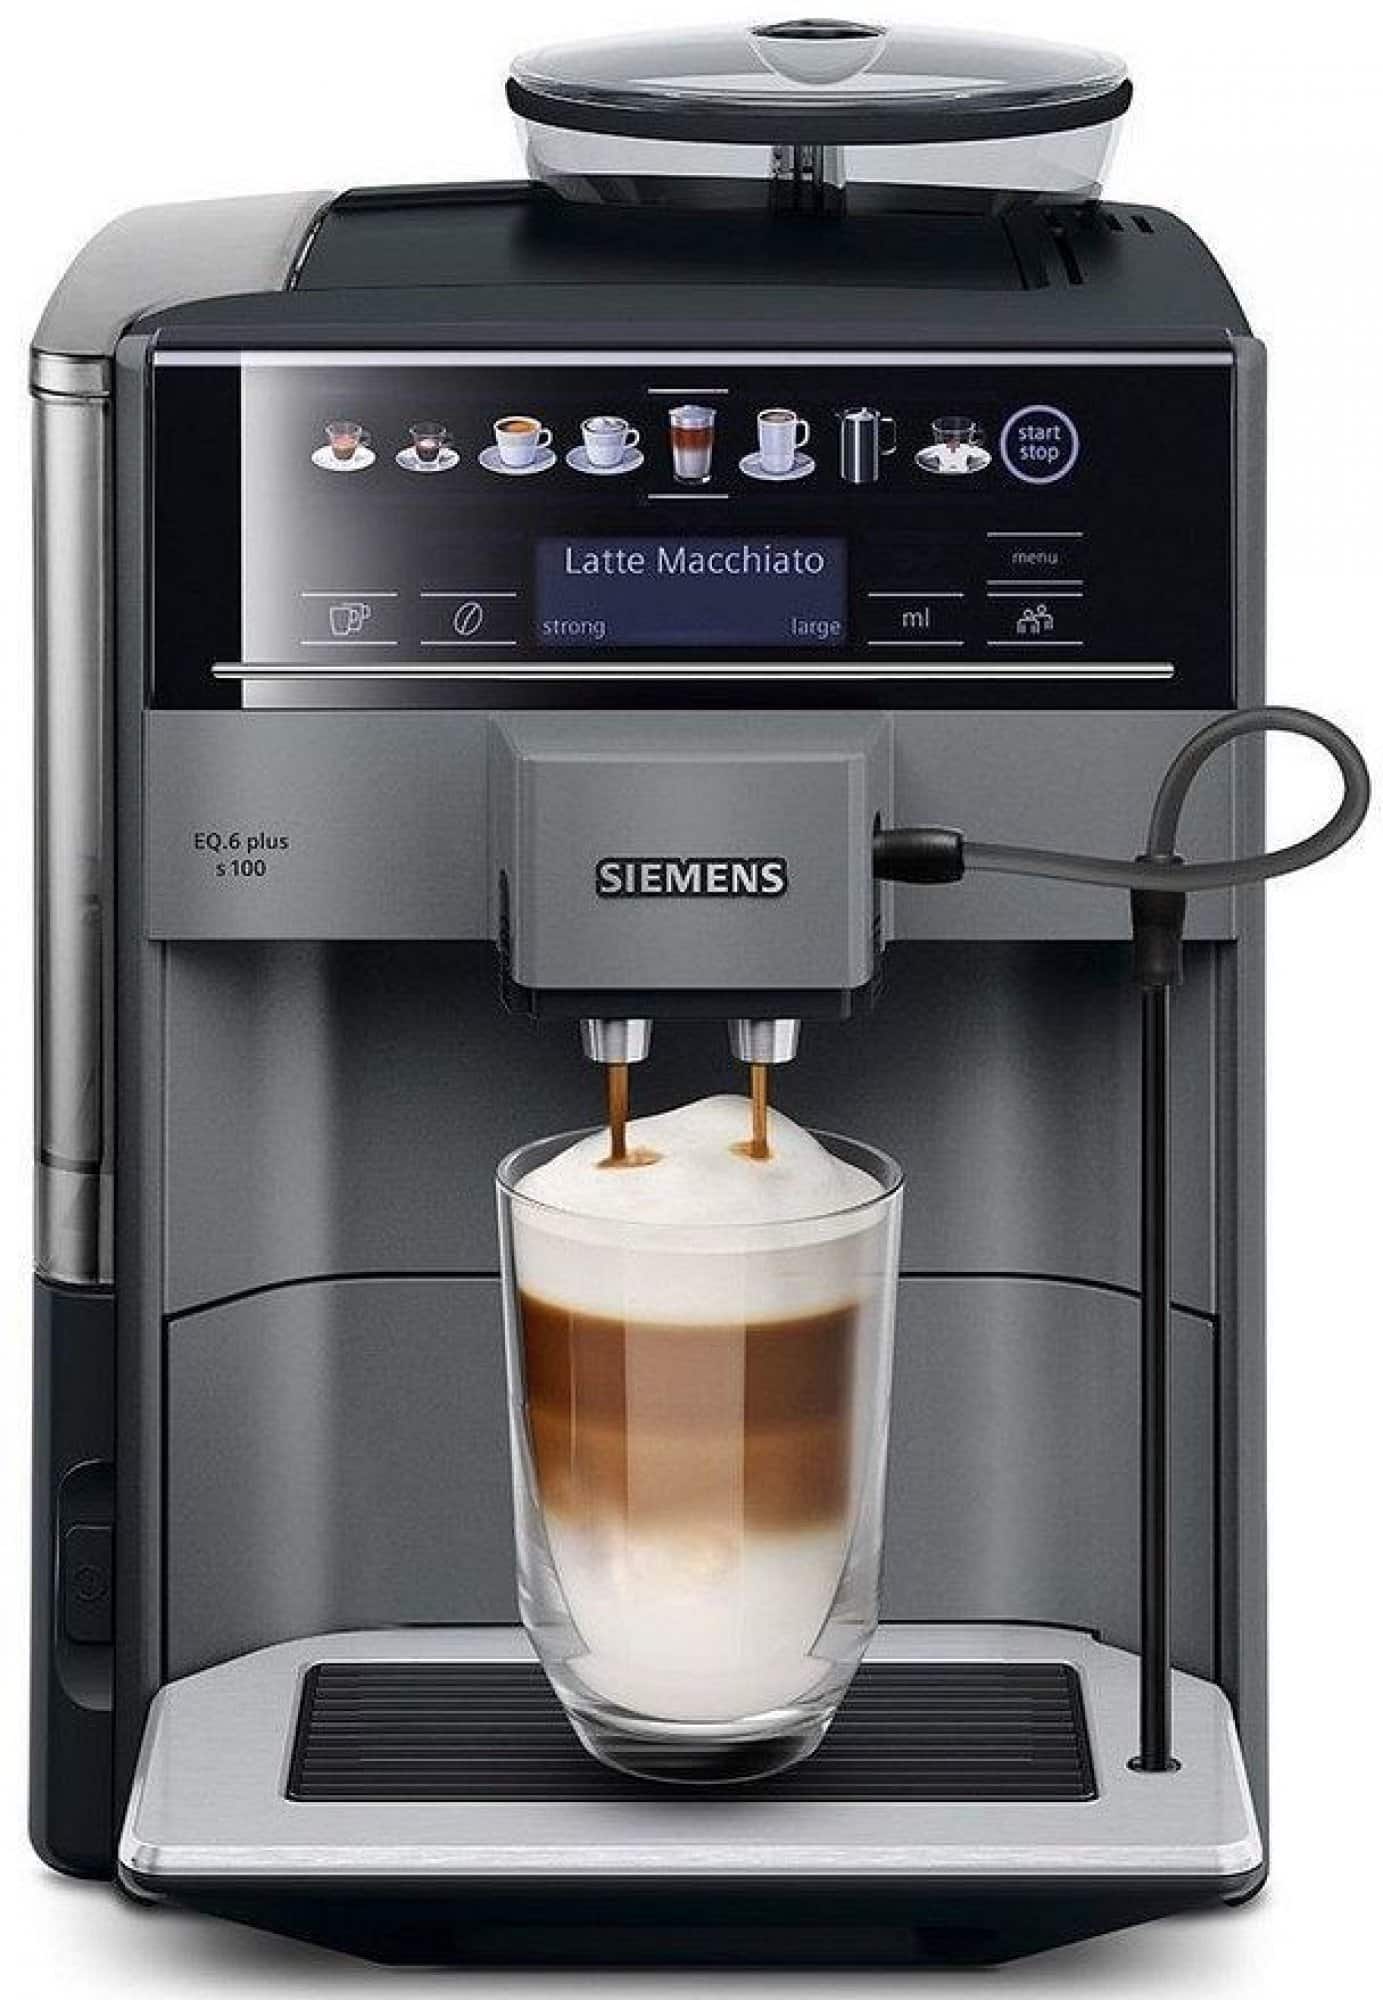 Plně automatický kávovar od výrobce Siemens.